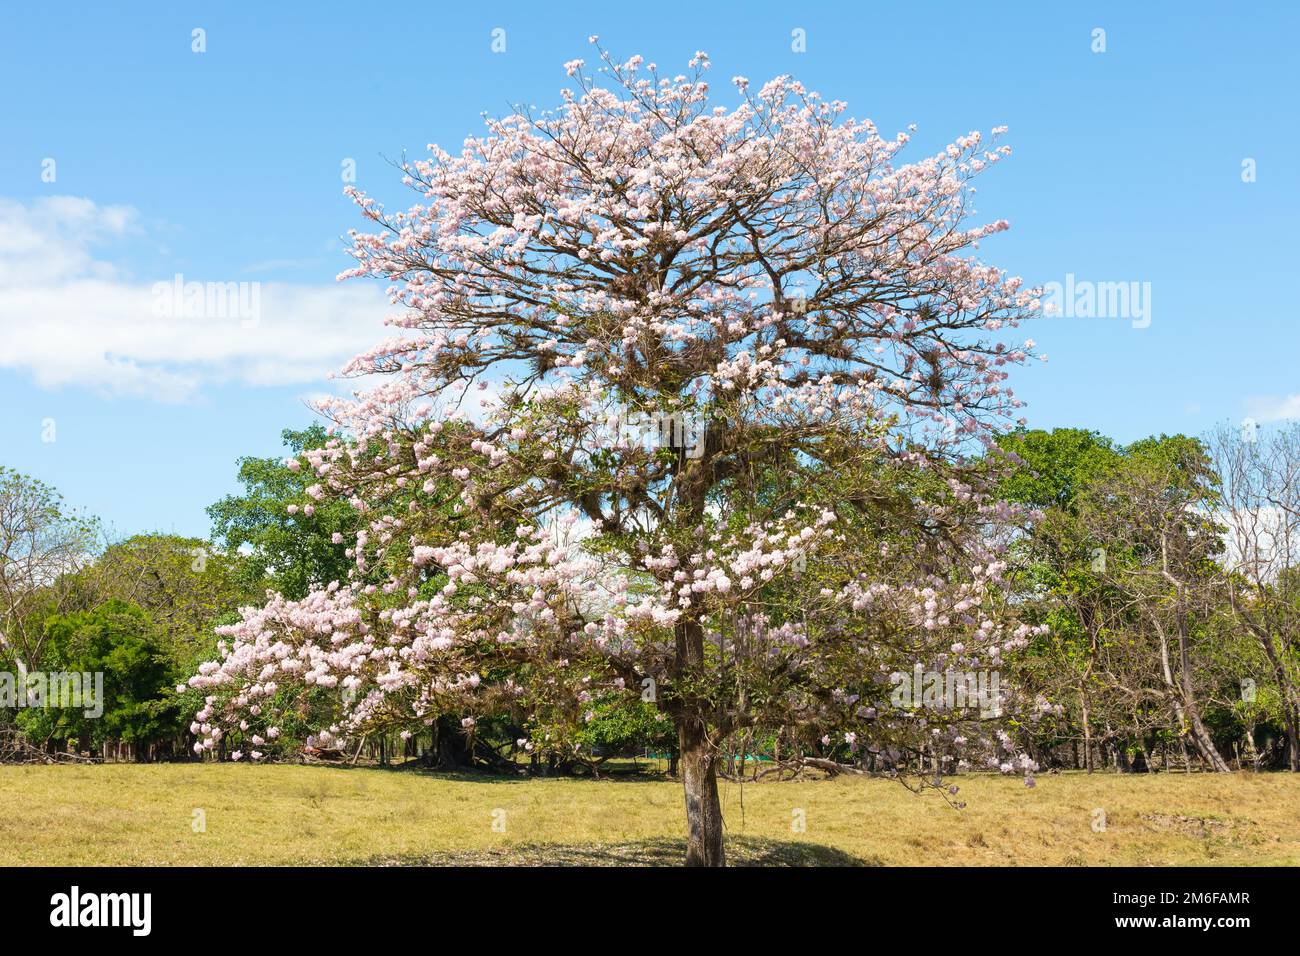 Panama Las Lomas, guayacan tree with pink flower Stock Photo